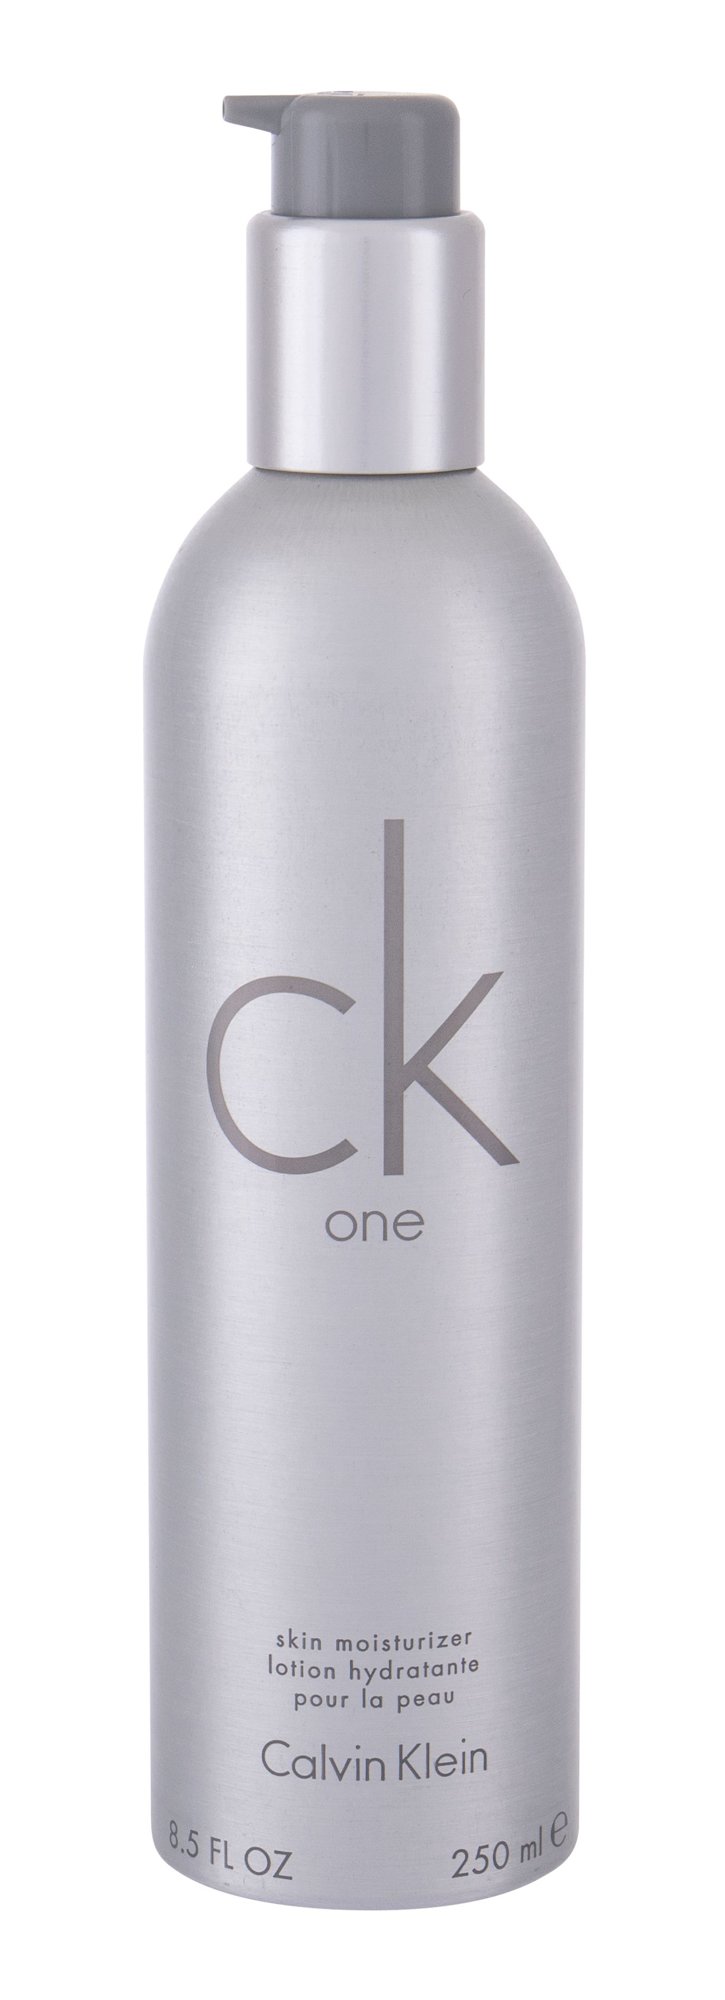 Calvin Klein CK One 250ml kūno losjonas